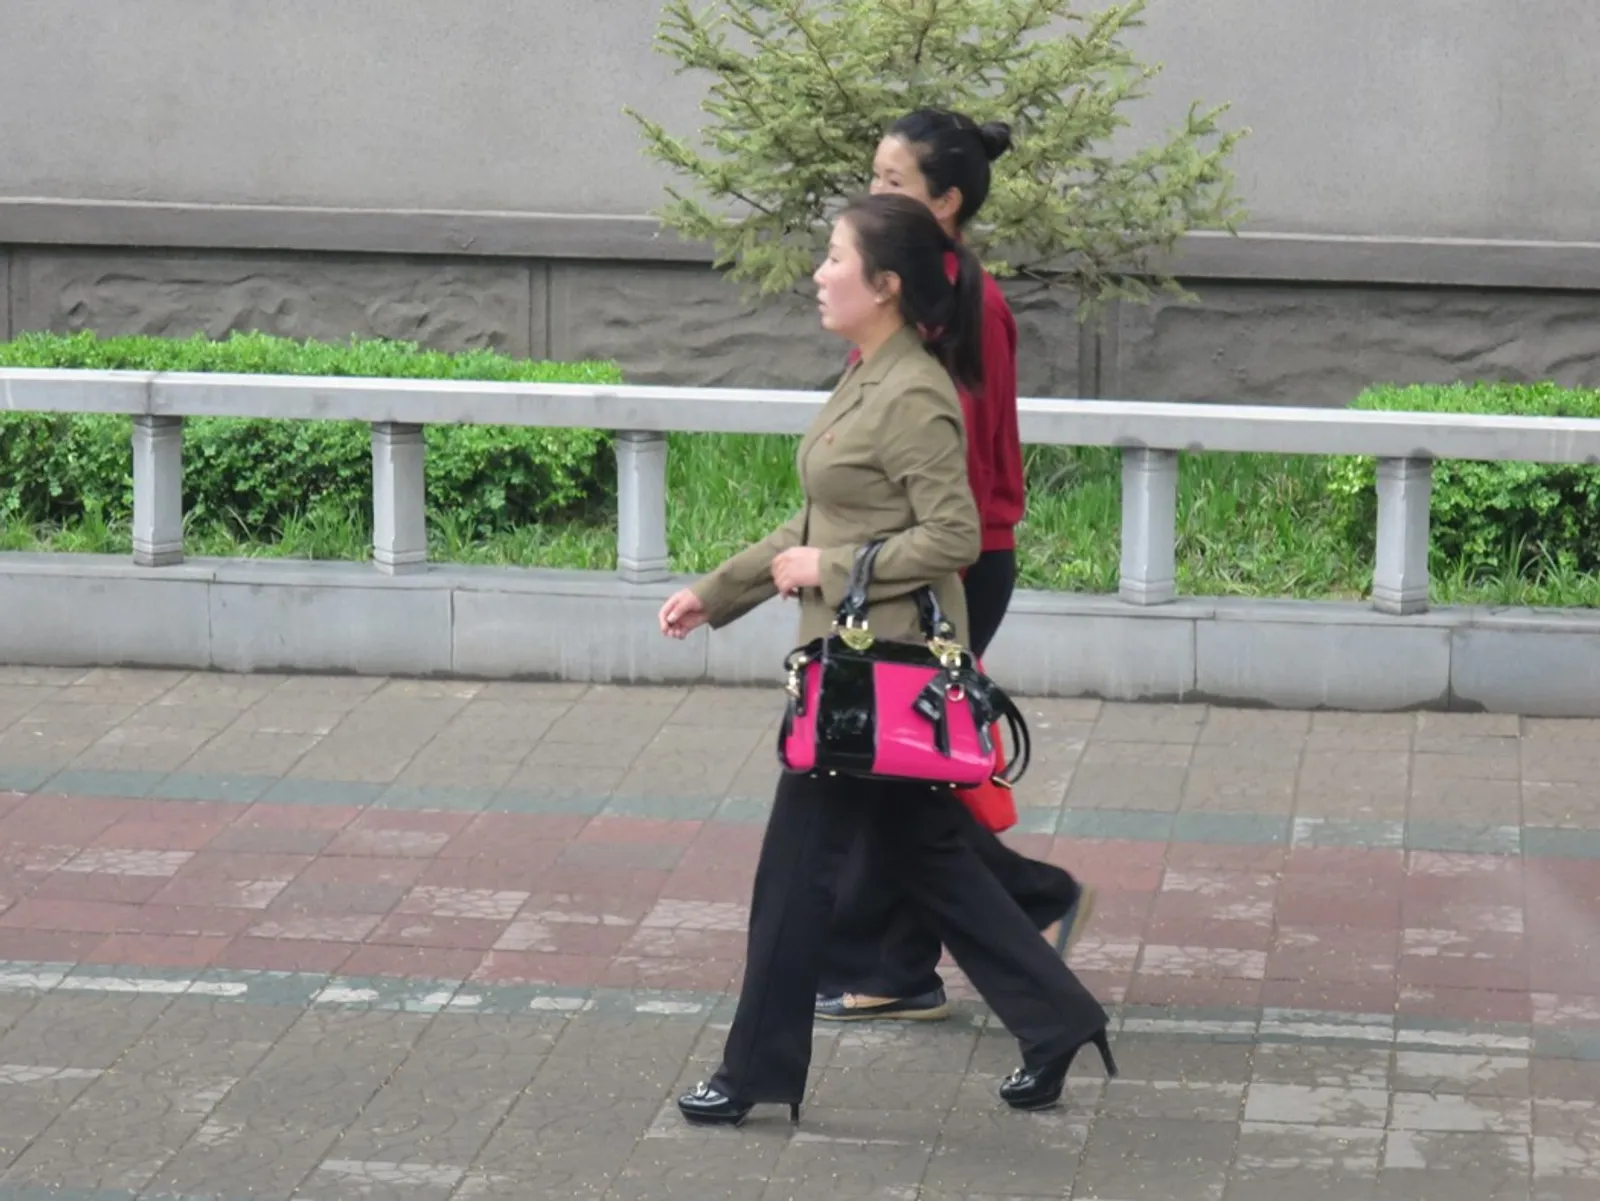 Intip Modisnya Gaya Pakaian Perempuan di Korea Utara